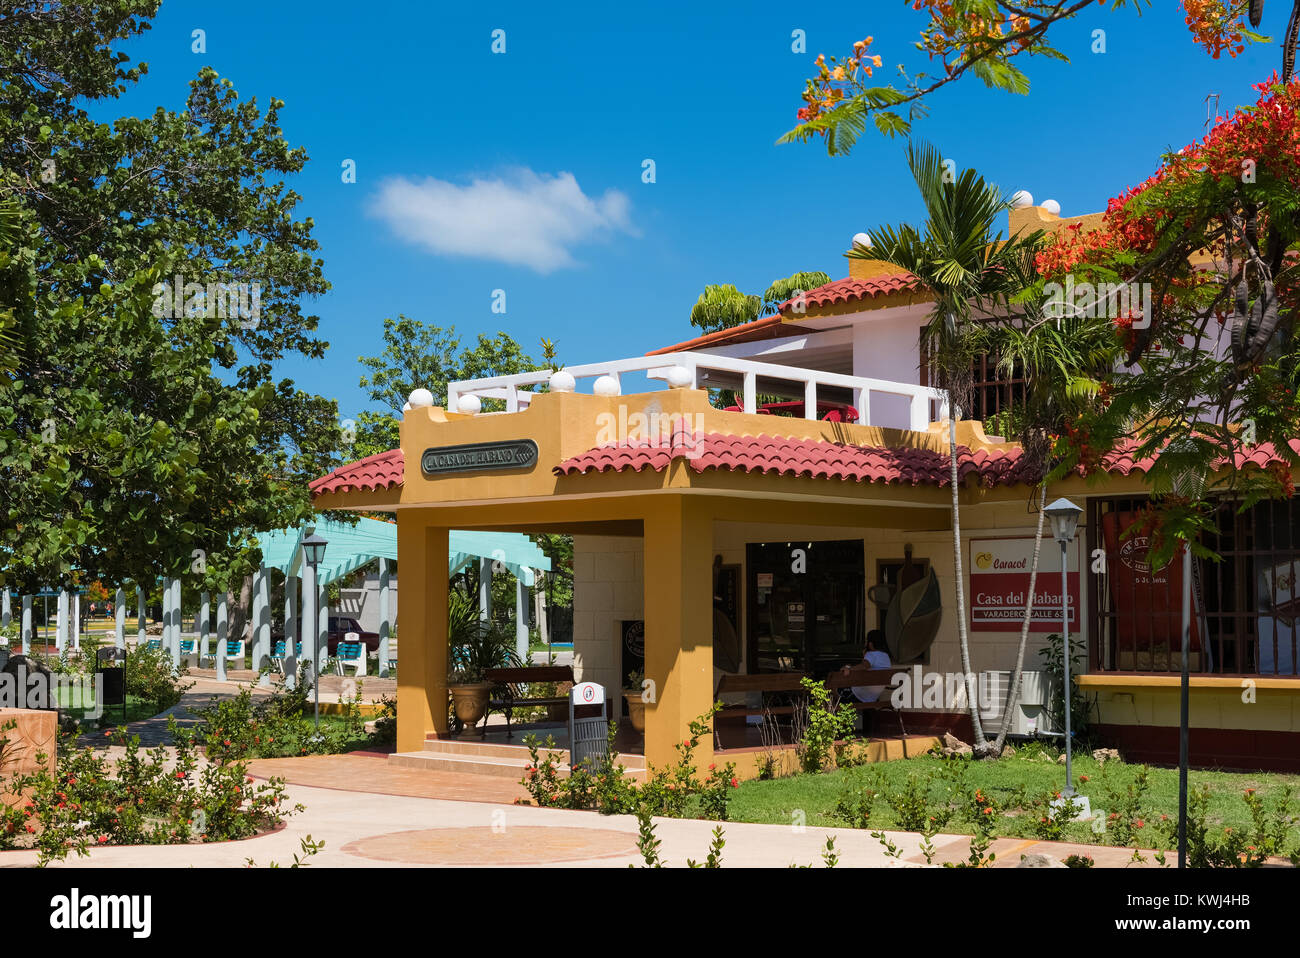 Touristen Attraktion Tabakladen mit allen Marken aus Tabak Marken in Varadero Kuba - Serie Kuba Reportage Stockfoto